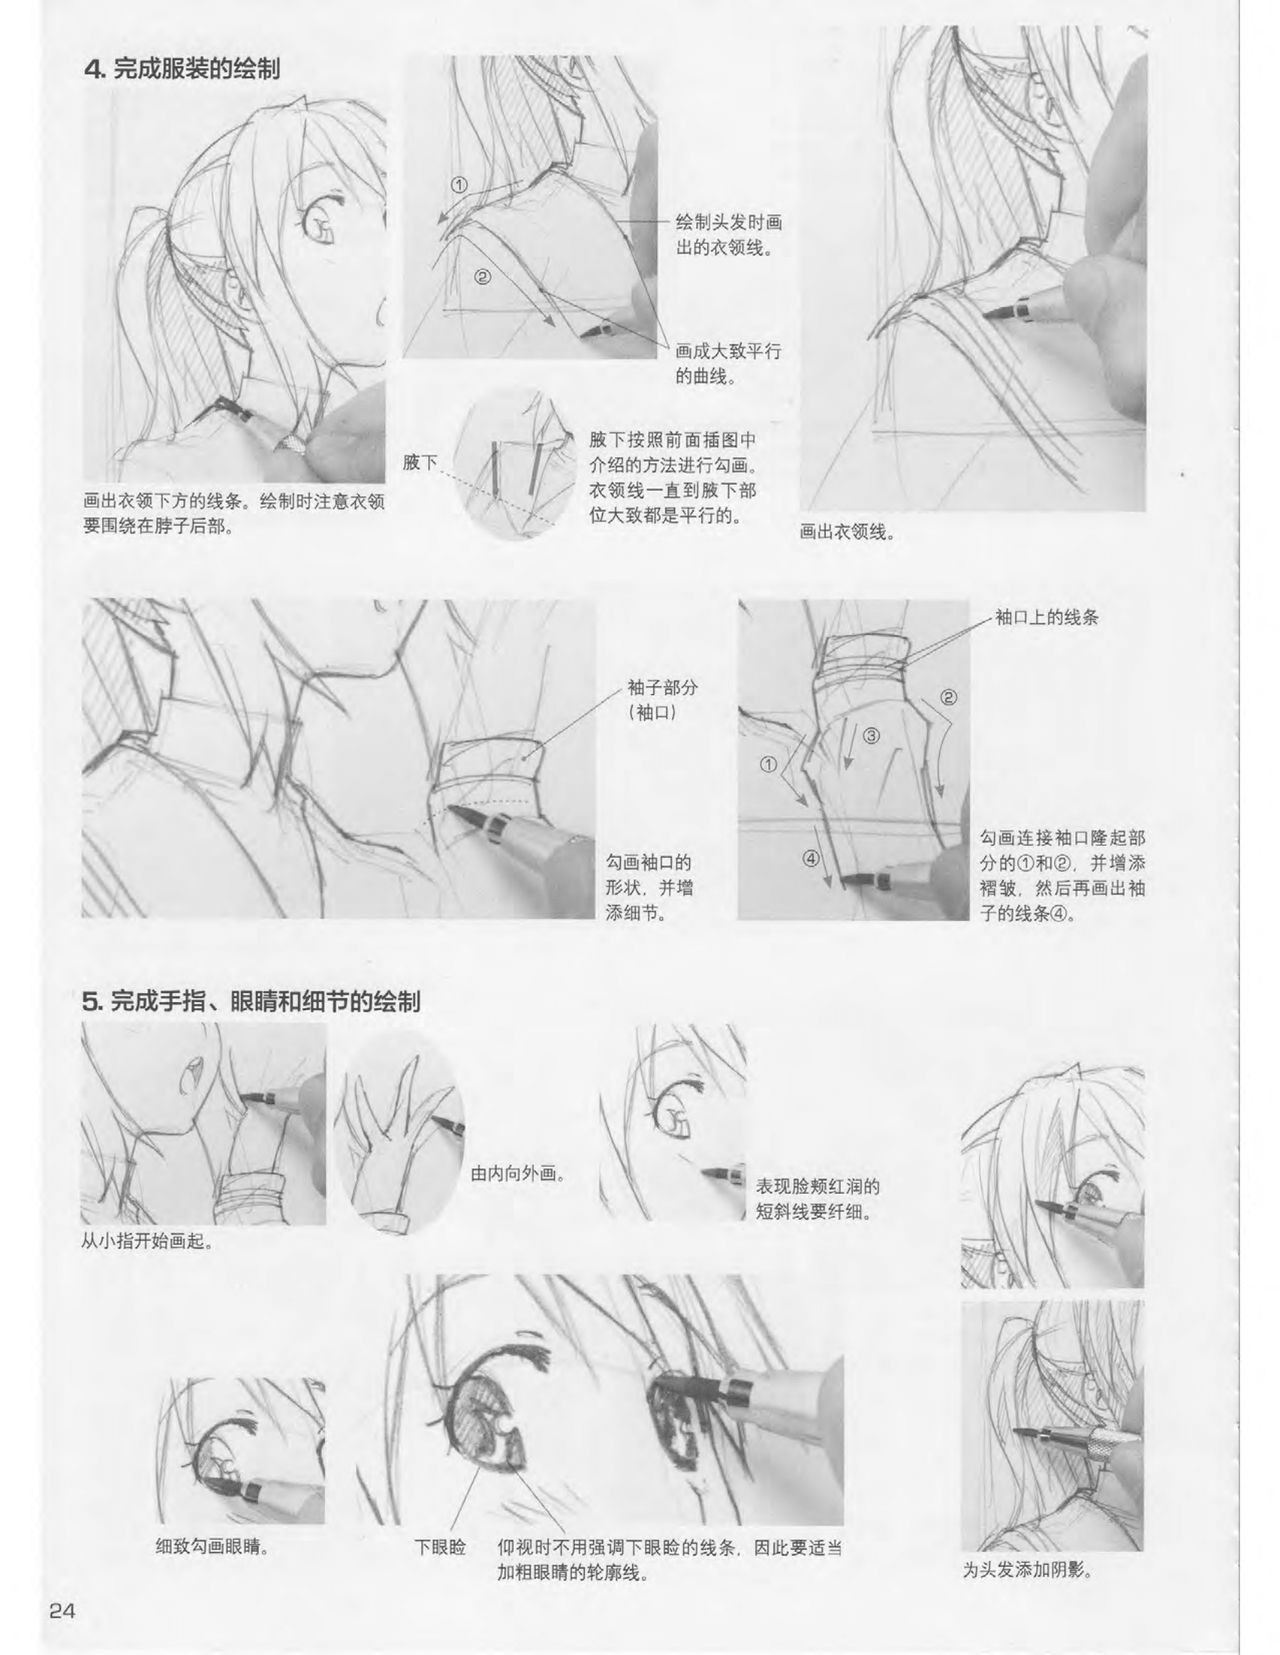 Japanese Manga Master Lecture 3: Lin Akira and Kakumaru Maru Talk About Glamorous Character Modeling 24